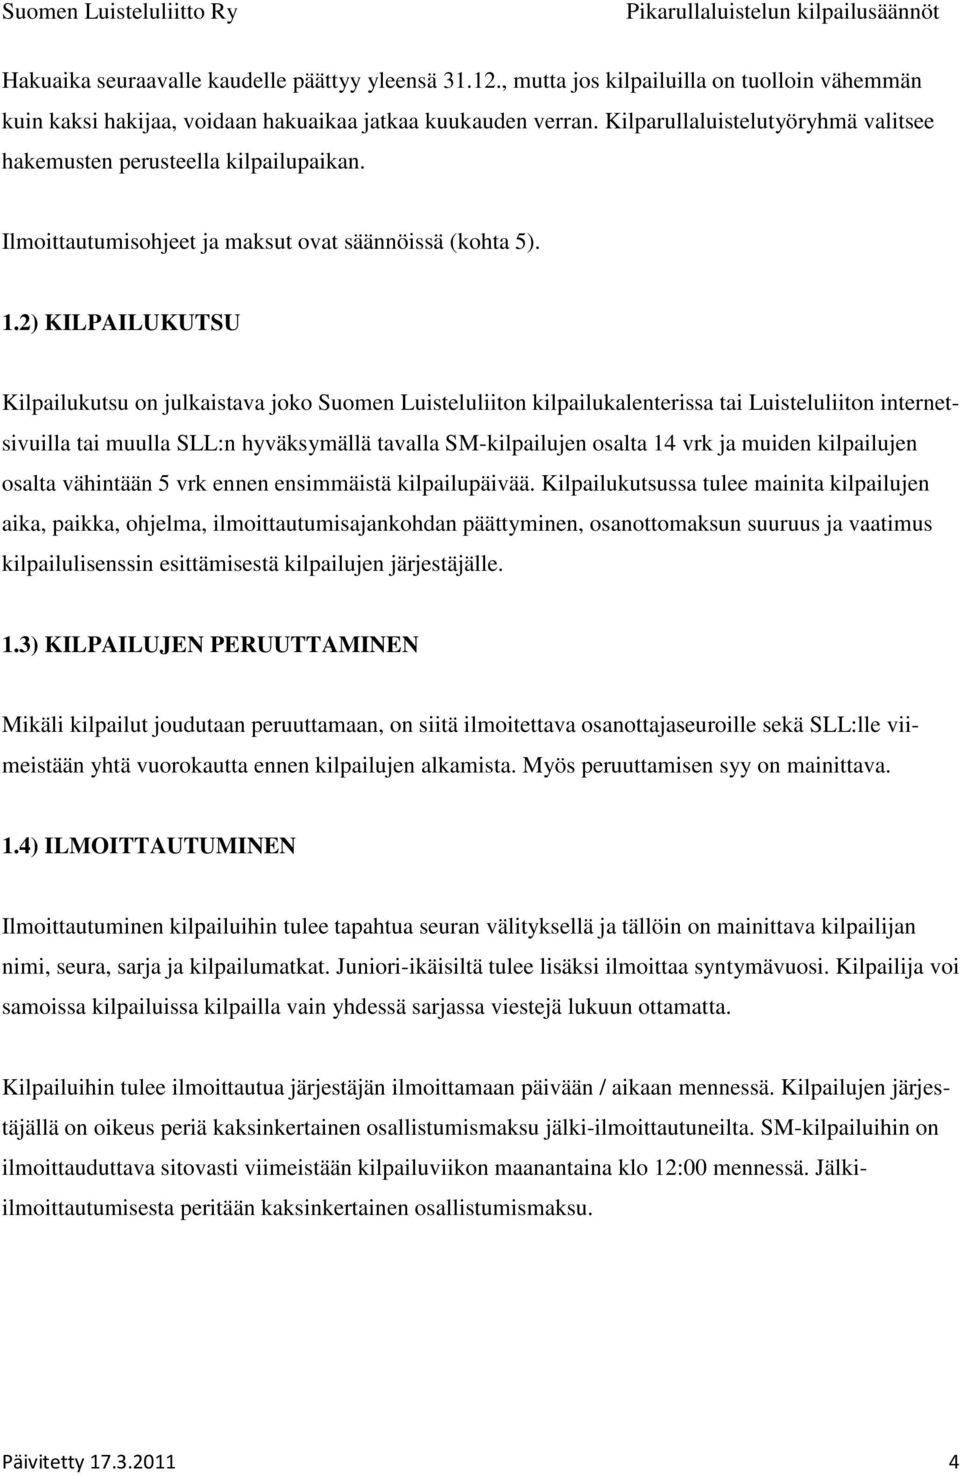 2) KILPAILUKUTSU Kilpailukutsu on julkaistava joko Suomen Luisteluliiton kilpailukalenterissa tai Luisteluliiton internetsivuilla tai muulla SLL:n hyväksymällä tavalla SM-kilpailujen osalta 14 vrk ja